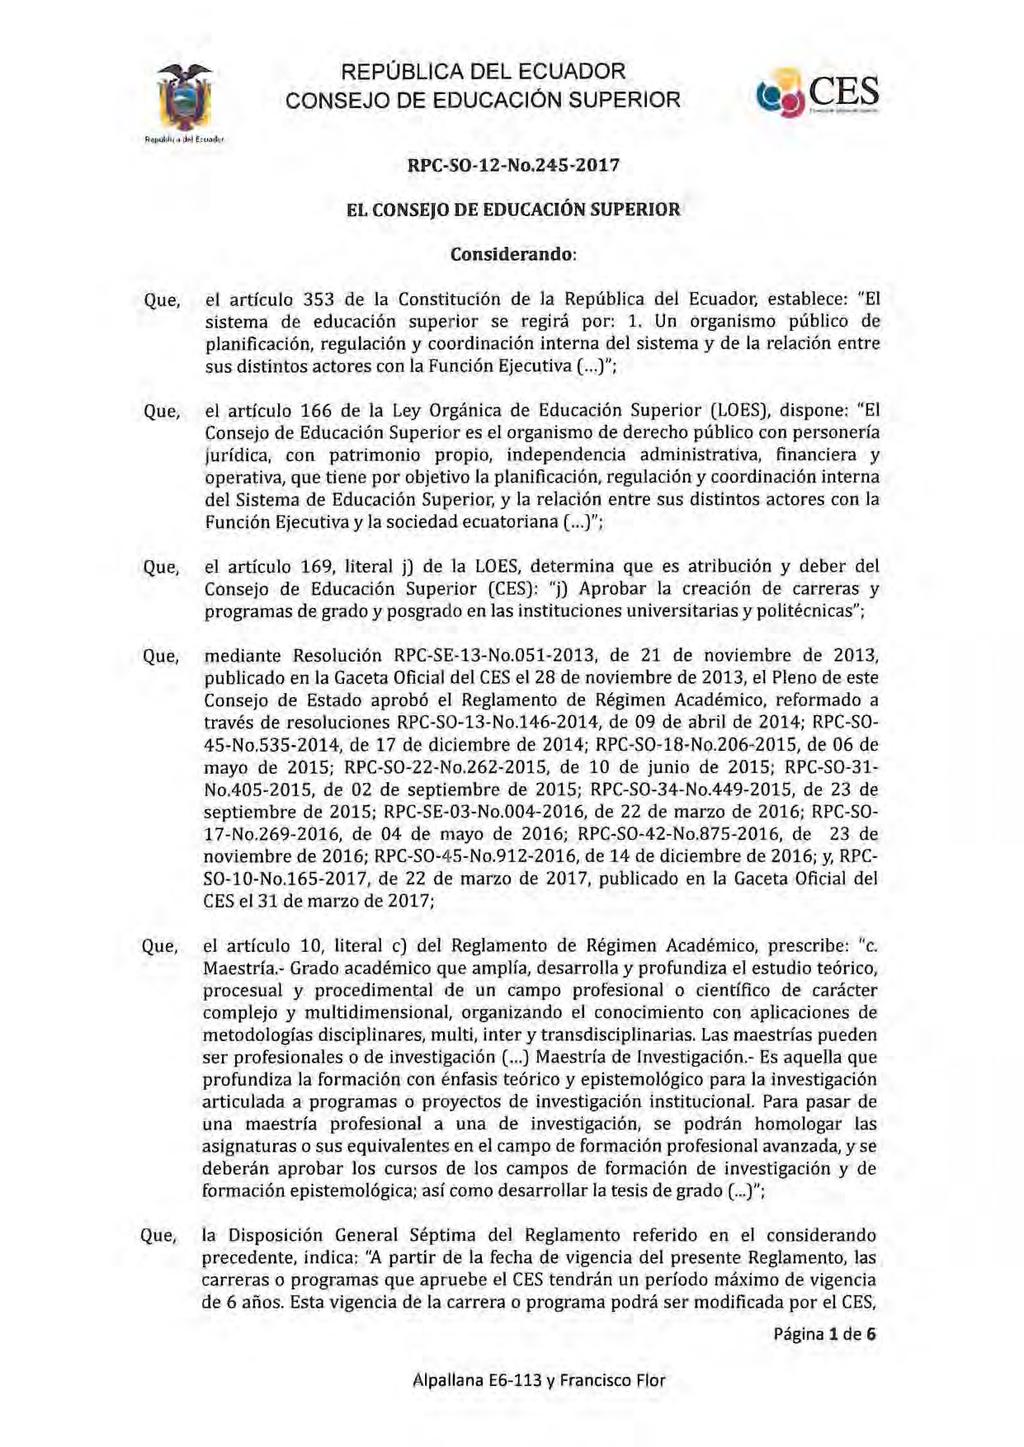 RPC-SO-1 2-No_245-2017 EL CONSEJO DE EDUCACIÓN SUPERIOR Considerando: el artículo 353 de la Constitución de la República del Ecuador. establece: "El sistema de educación superior se regirá por: 1.